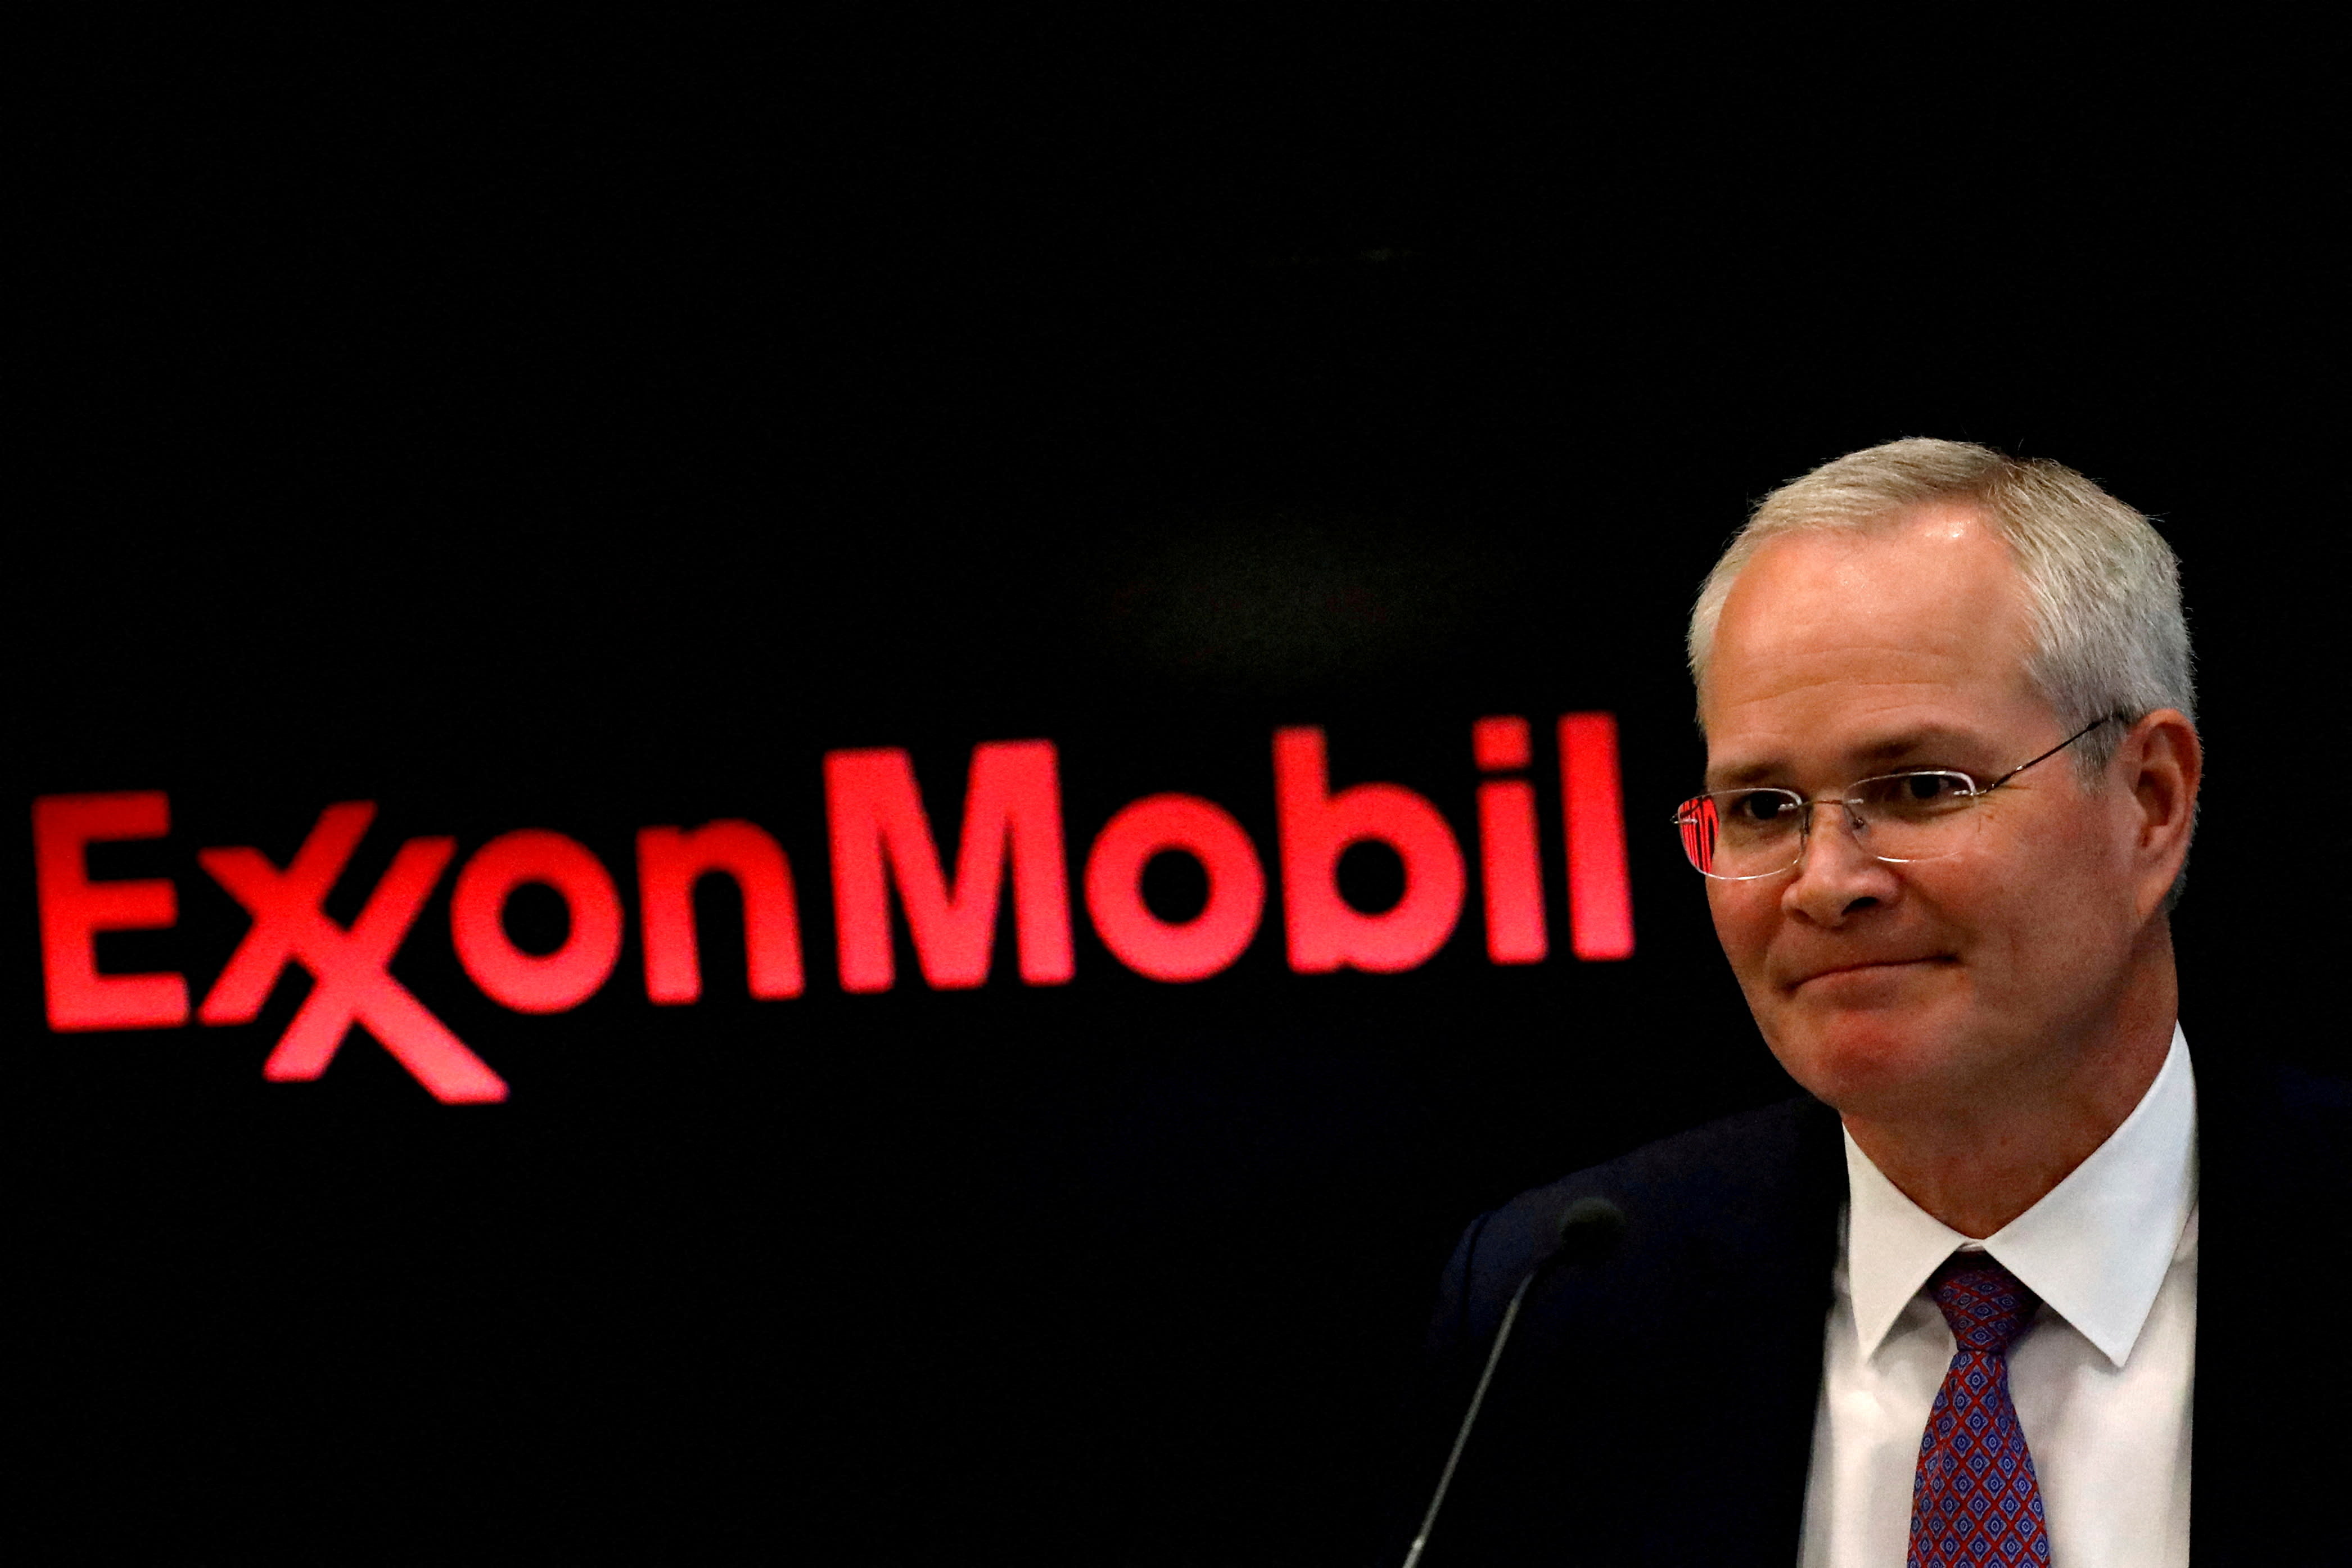 Exxon prevede un aumento significativo dei profitti a seguito della riduzione dei costi e aumenterà i riacquisti di azioni proprie dopo la conclusione dell’accordo con Pioneer